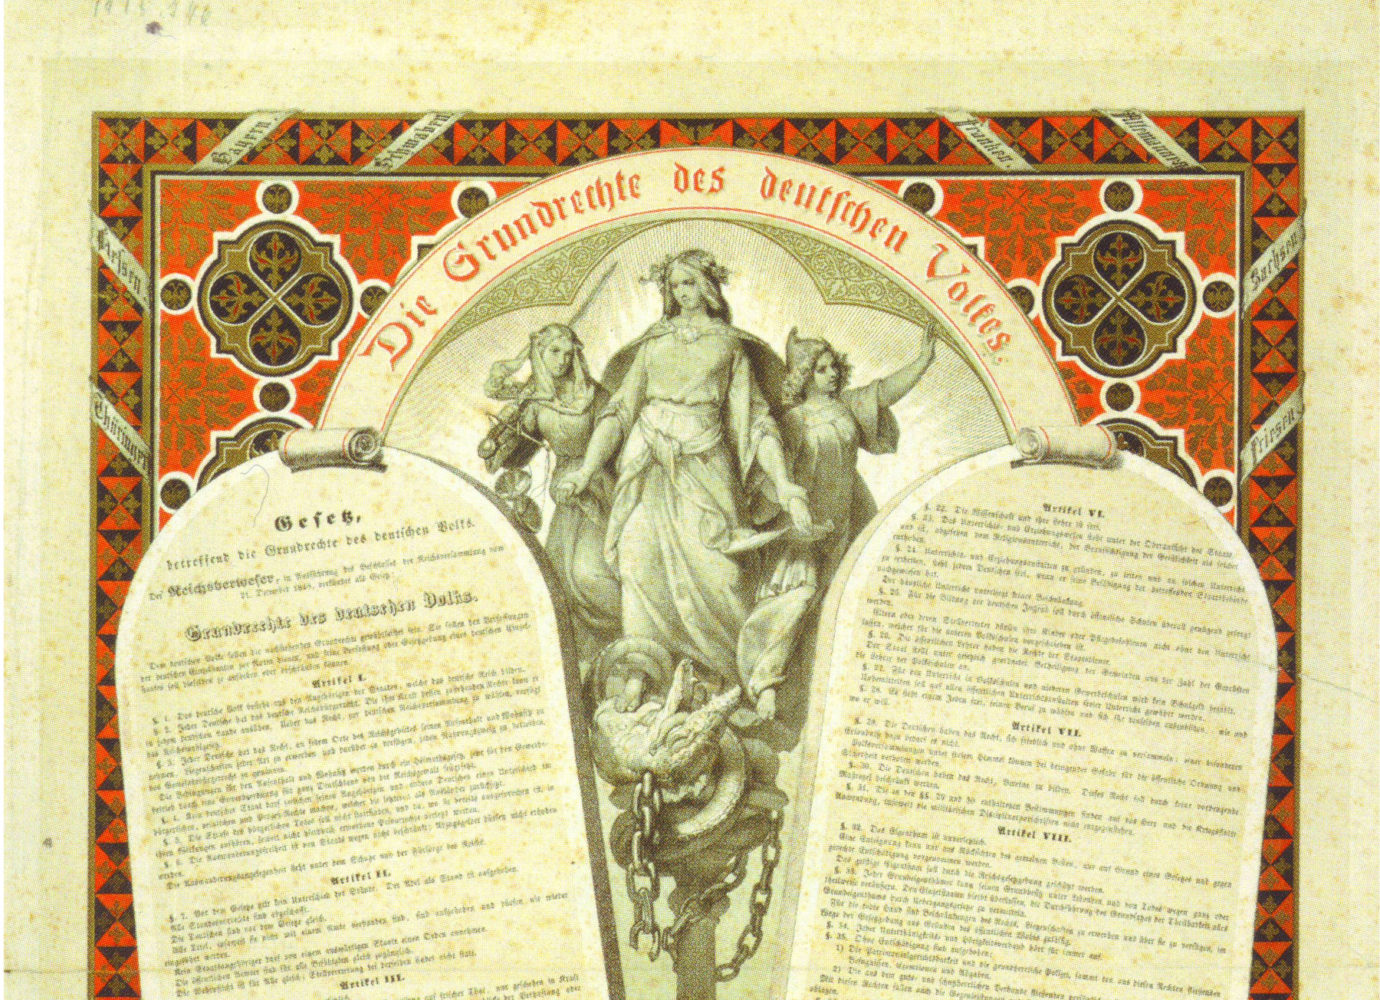 Die Grundrechte des deutschen Volkes. Kolorierte Lithographie, Adolf Schroedter. Frankfurt, 1848.